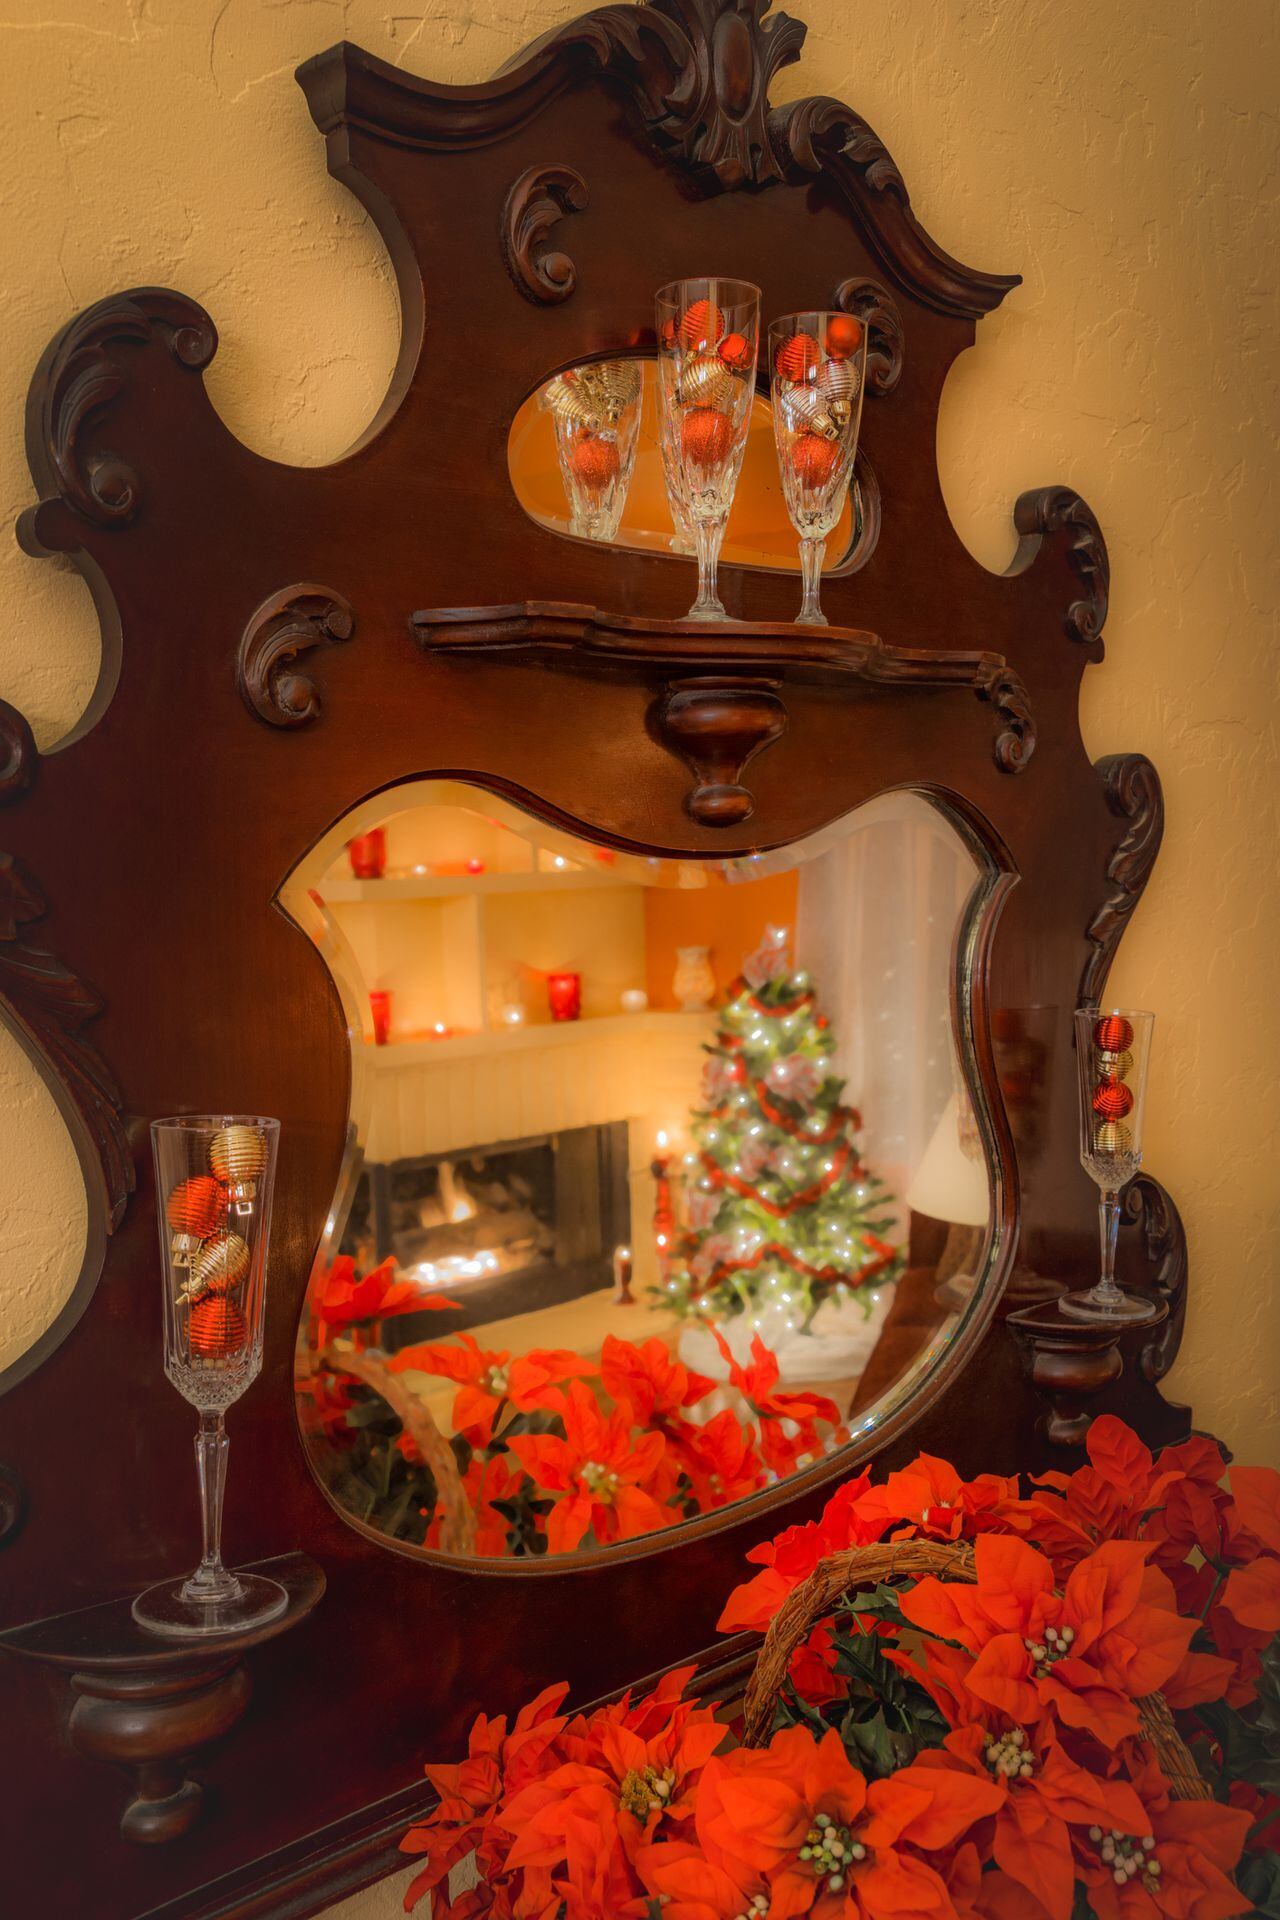 Magia instantánea: Transforme su espejo en el foco de la decoración navideña con este sencillo adorno exprés.